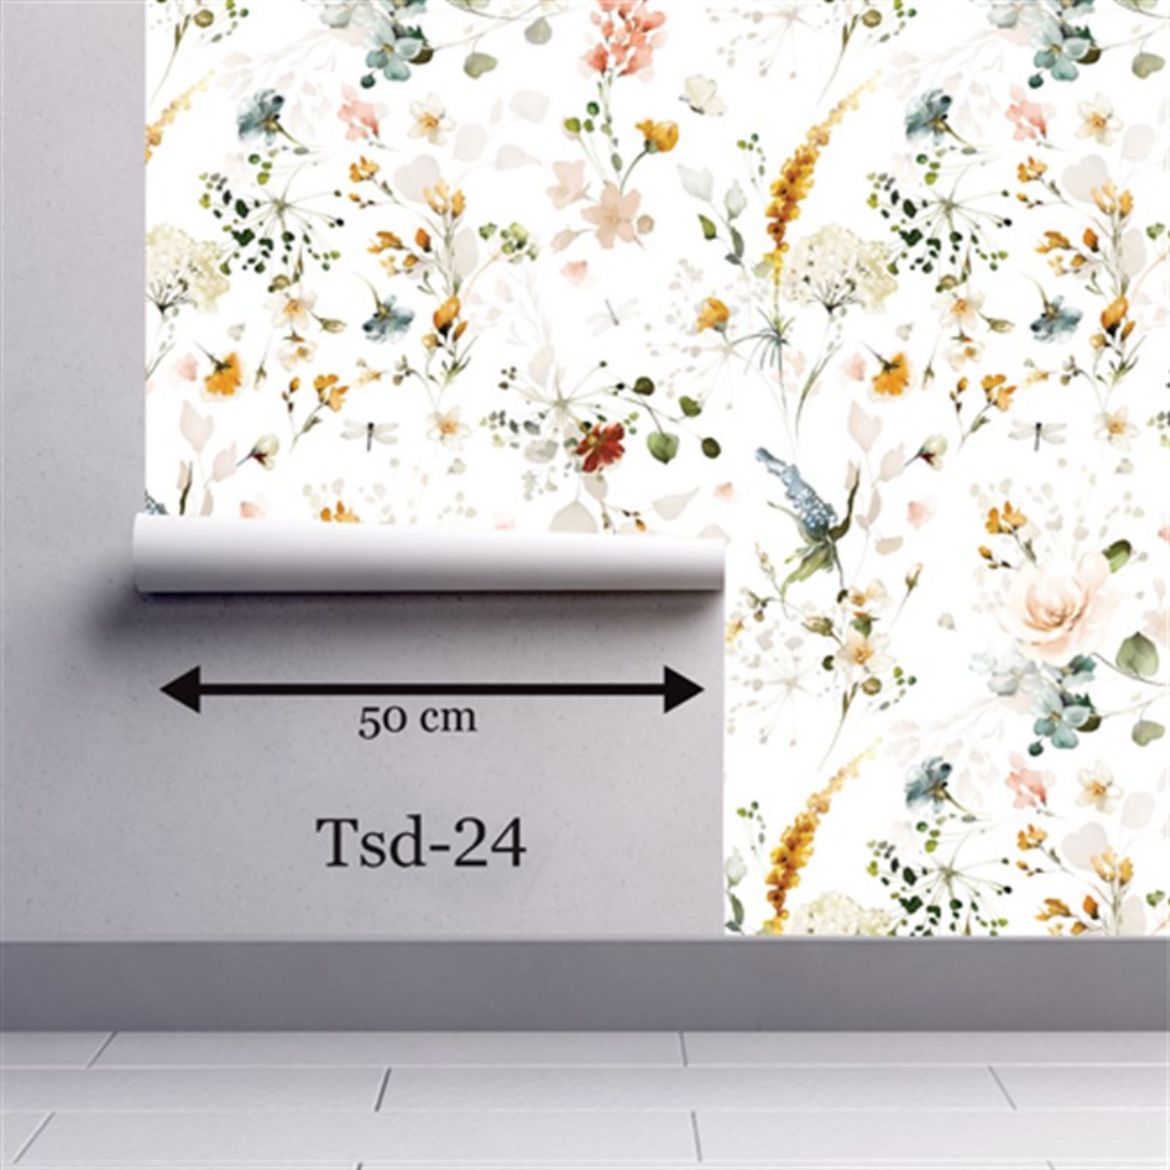 Tasarım Çiçek Desenli Duvar Kağıdı TSD-24 resmi